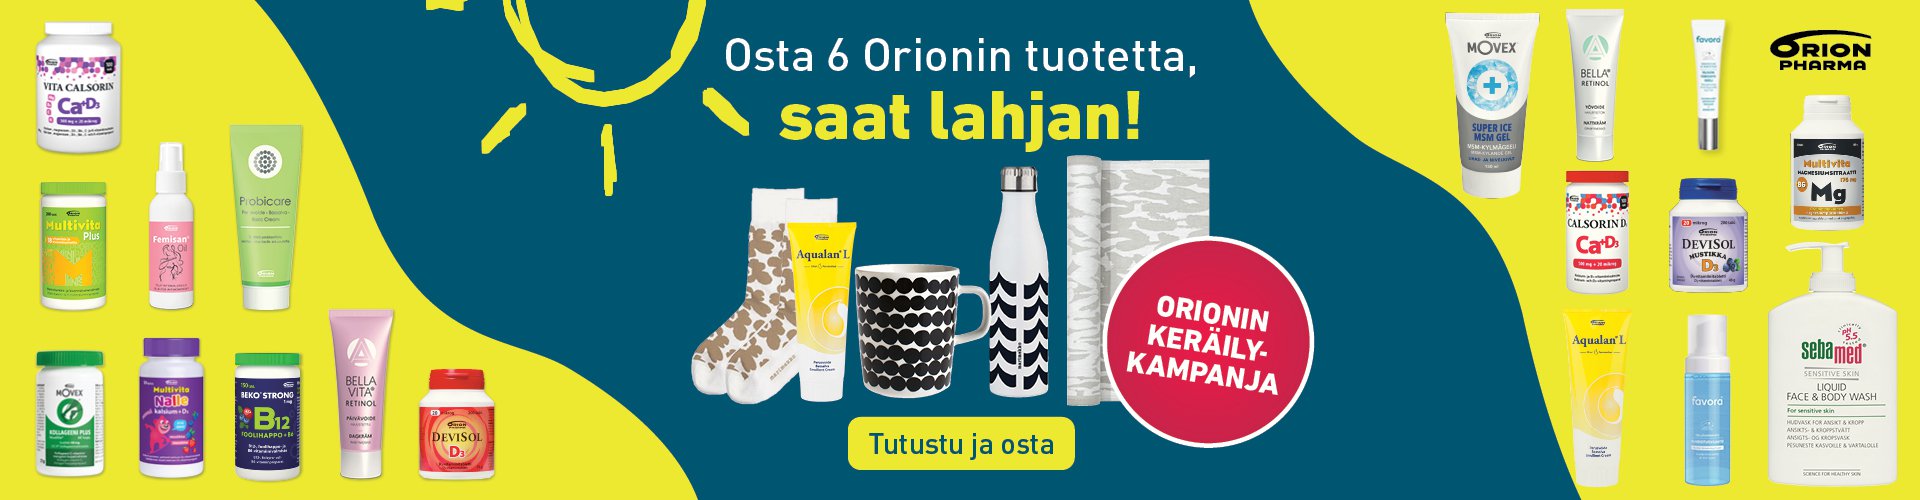 Asiakas ostaa Orionin keräilytuotteita, joista hän saa leimoja keräilykorttiin. Keräilyyn voi osallistua myös mobiilisti, jolloin keräilytuotteista saa koodeja, jotka asiakas itse kirjaa osoitteeseen orionkeraily.fi.